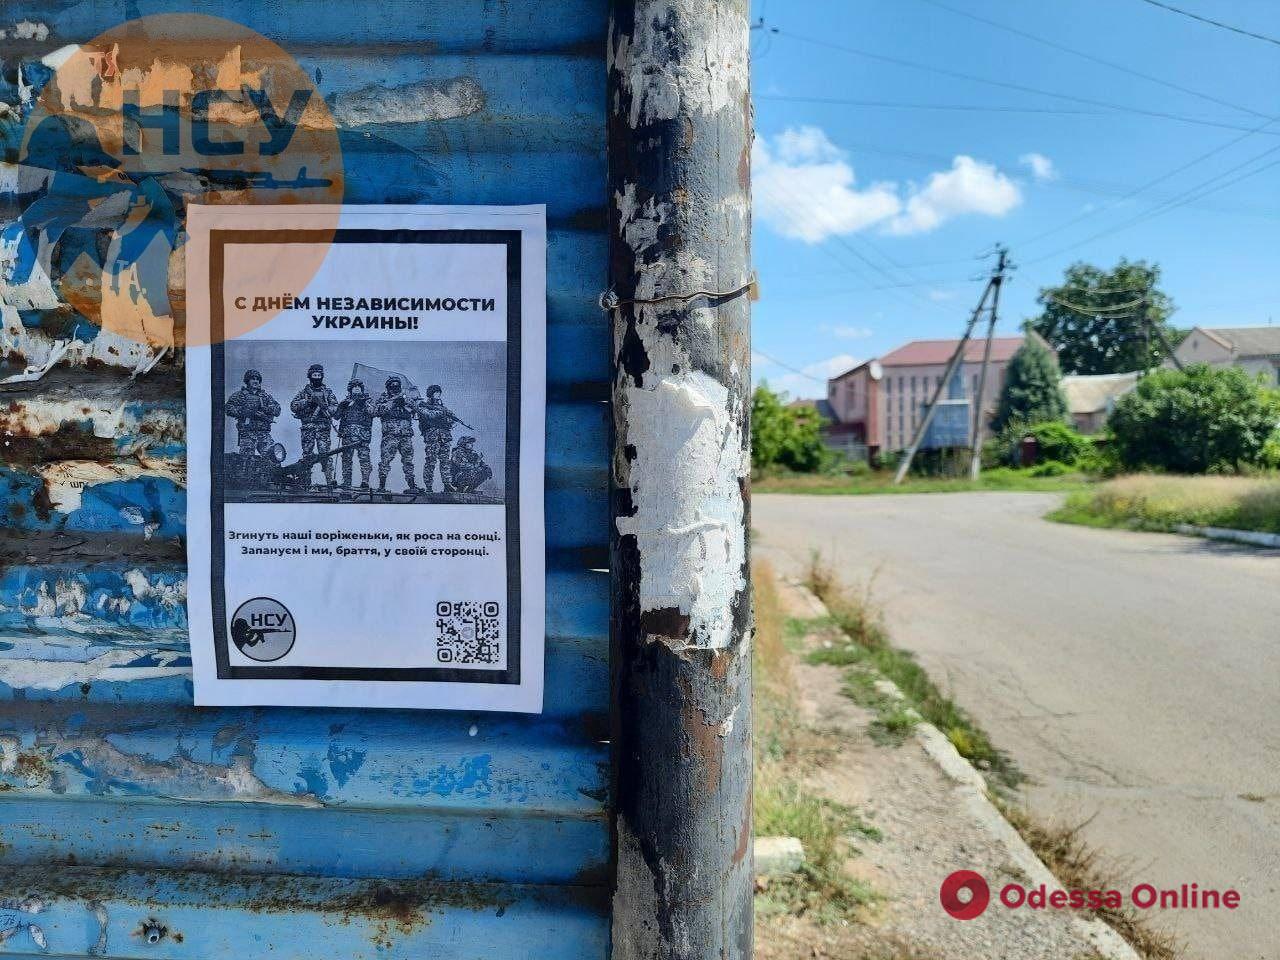 “Згинуть наші воріженьки, як роса на сонці”: українські партизани розклеїли листівки в окупованих містах